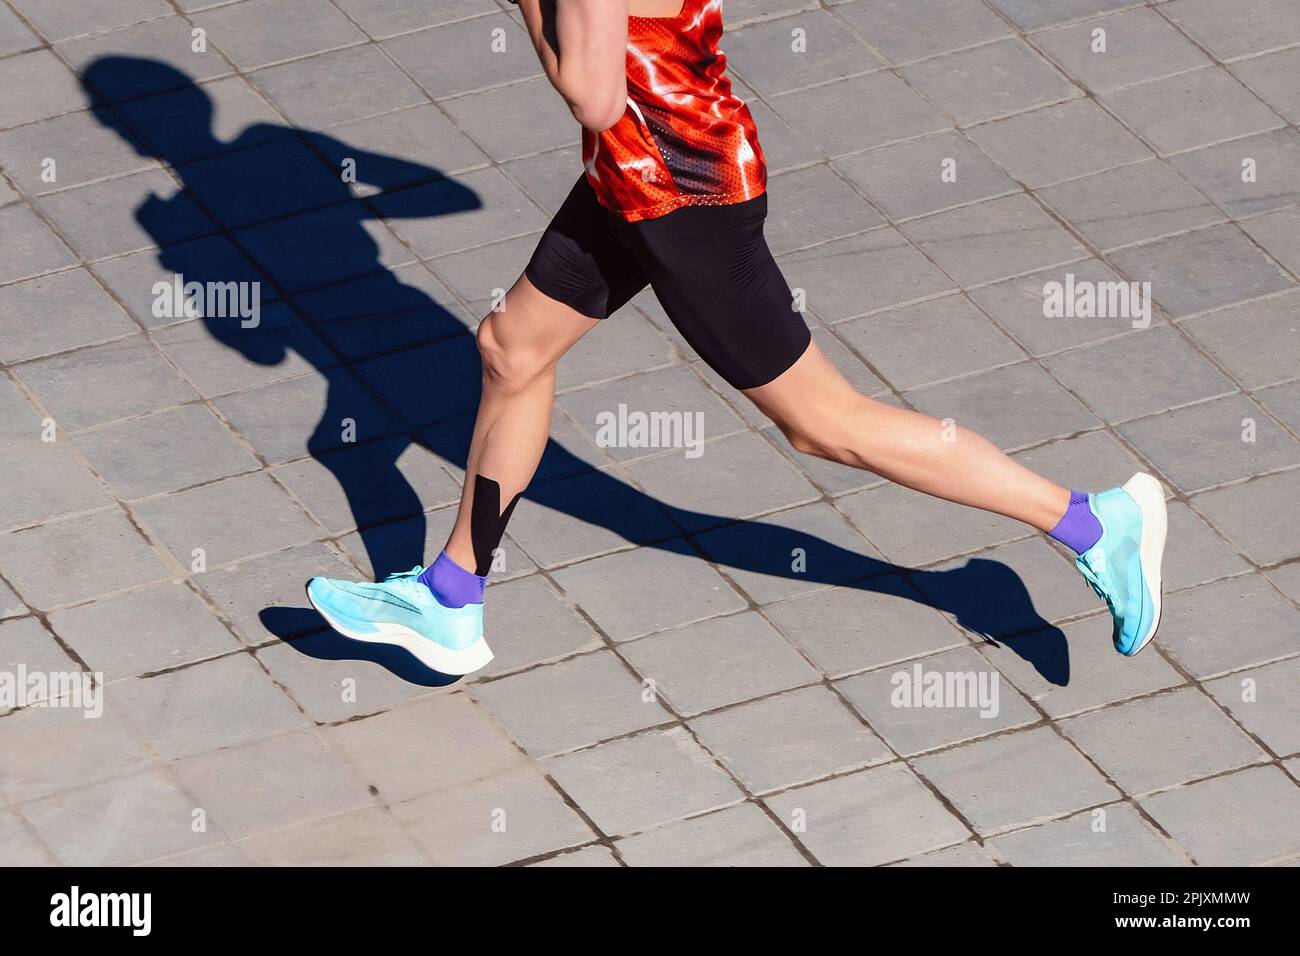 vue de dessus athlète coureur course marathon, jogging ombre sur les dalles, kinésiotapage de muscle de mollet Banque D'Images